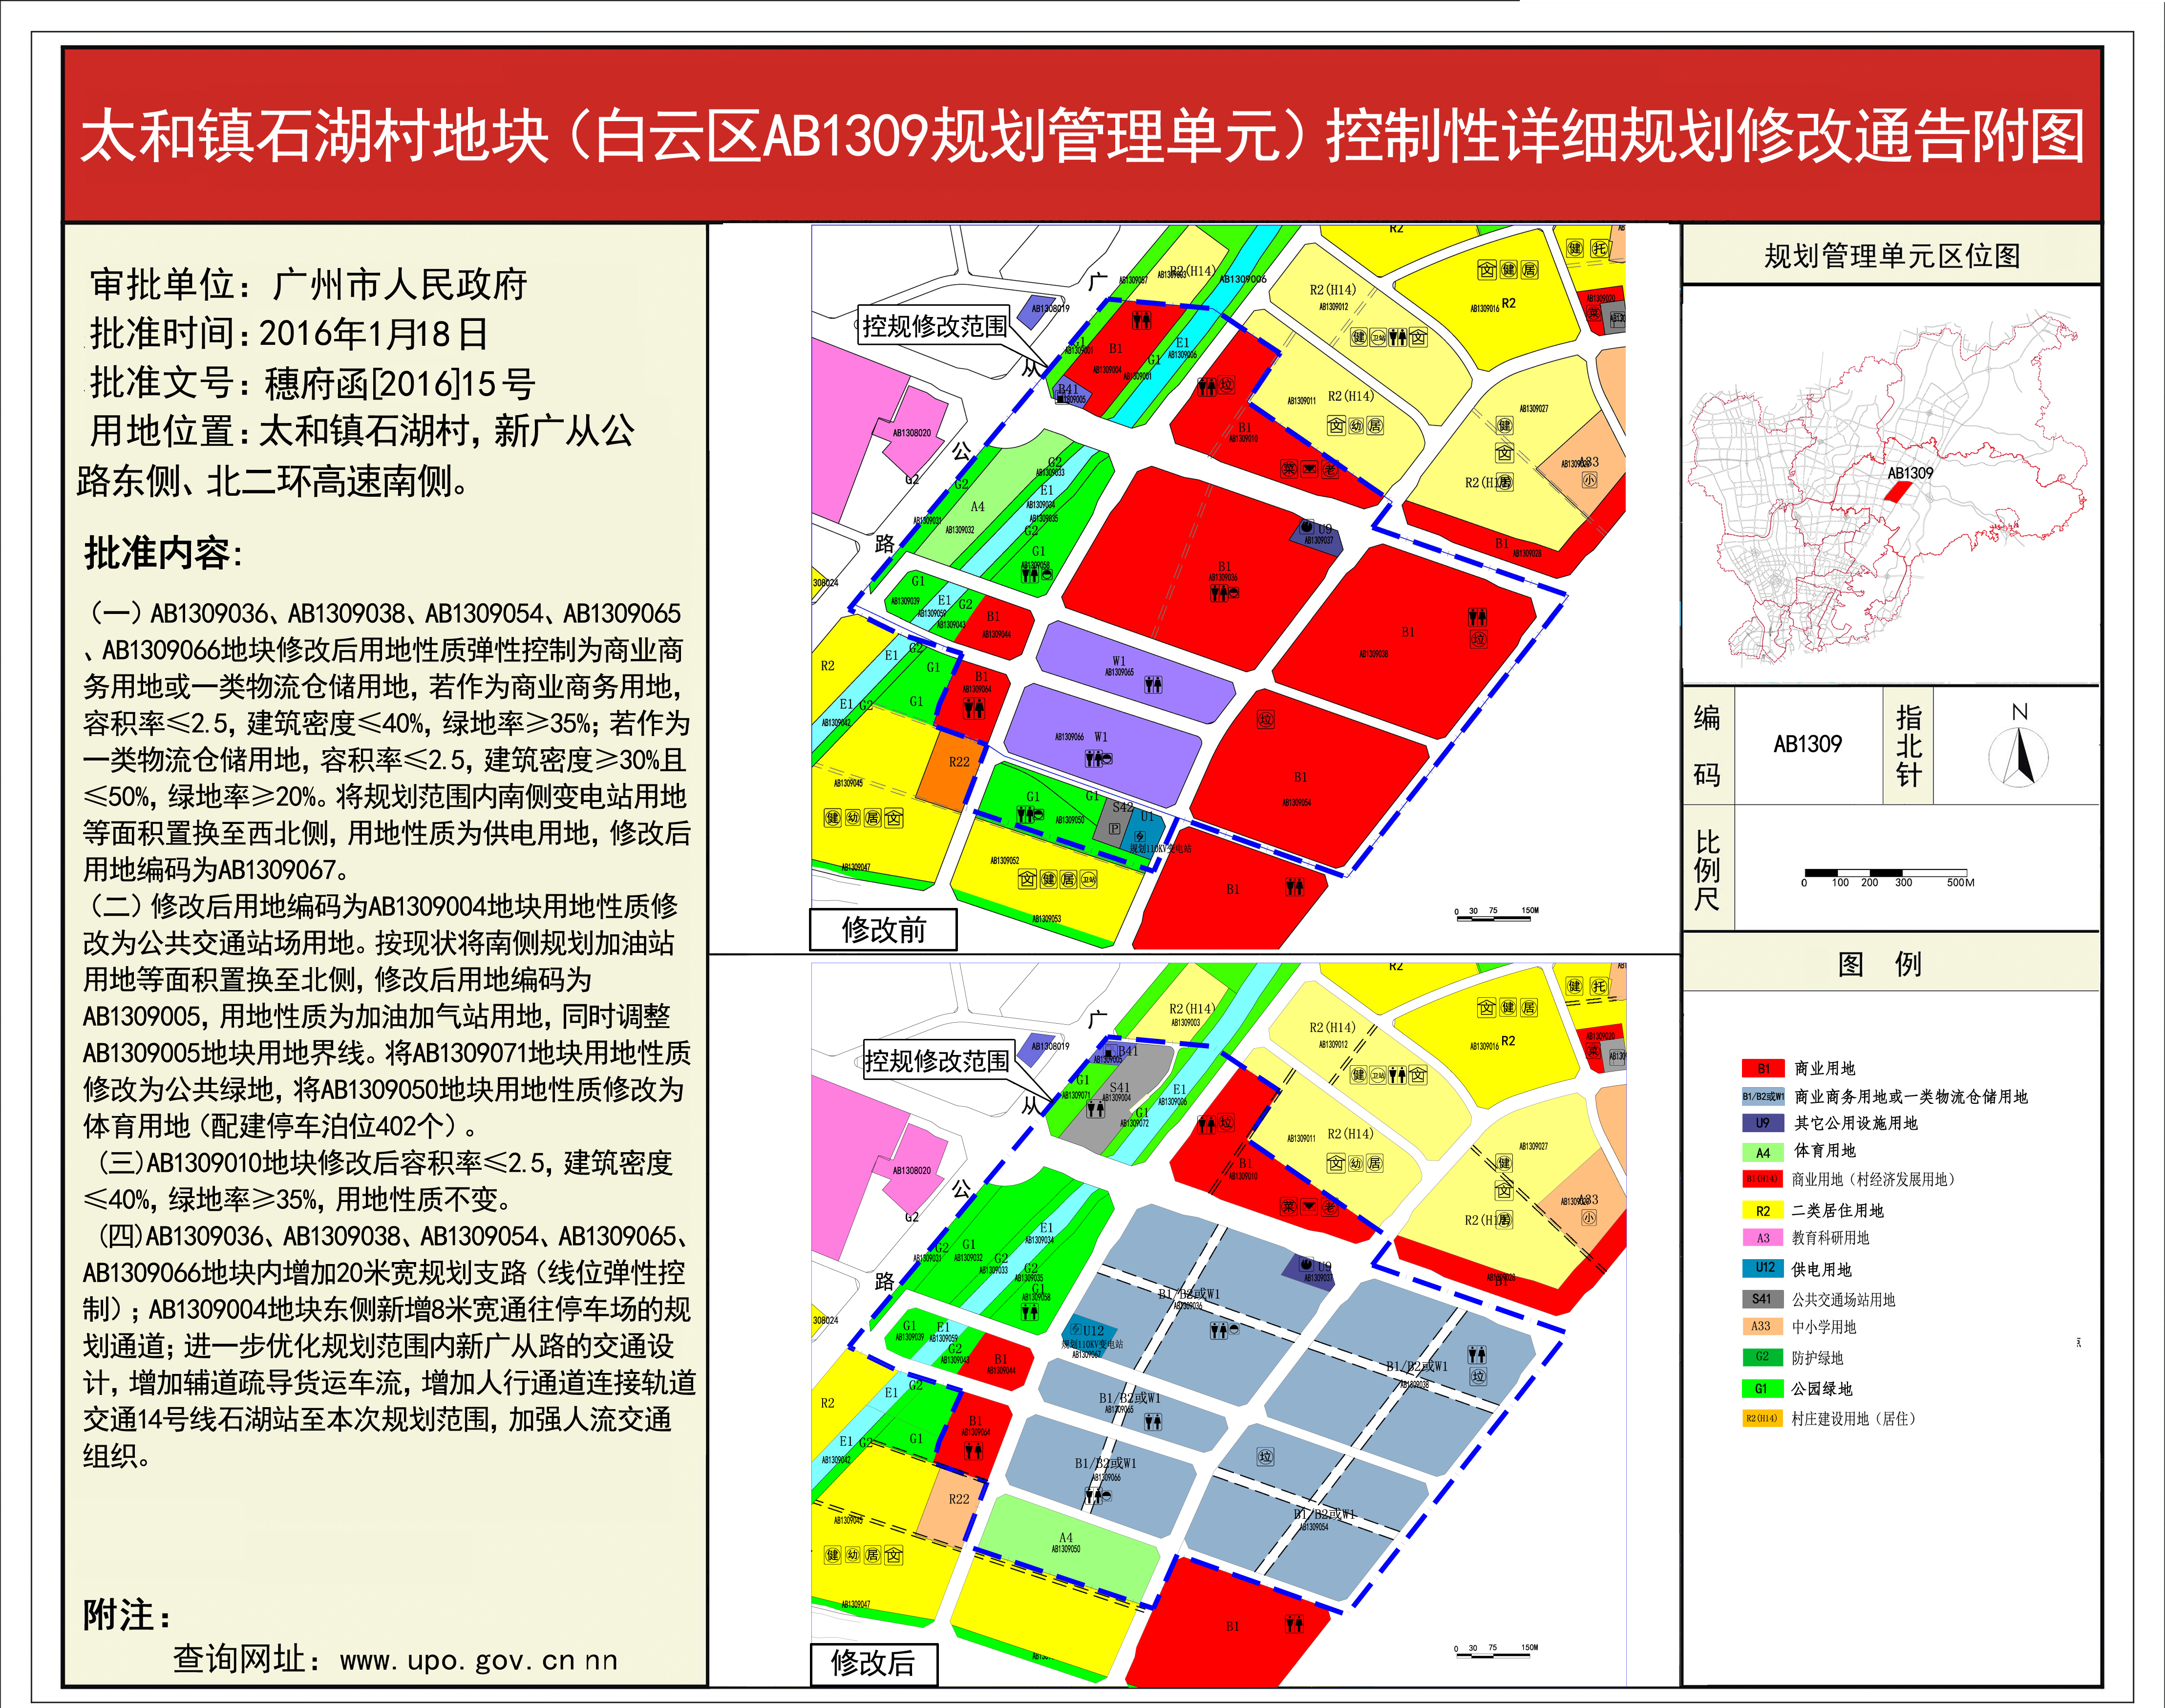 《广州市儿童公园(白云区ab2908规划管理单元)控制性详细规划